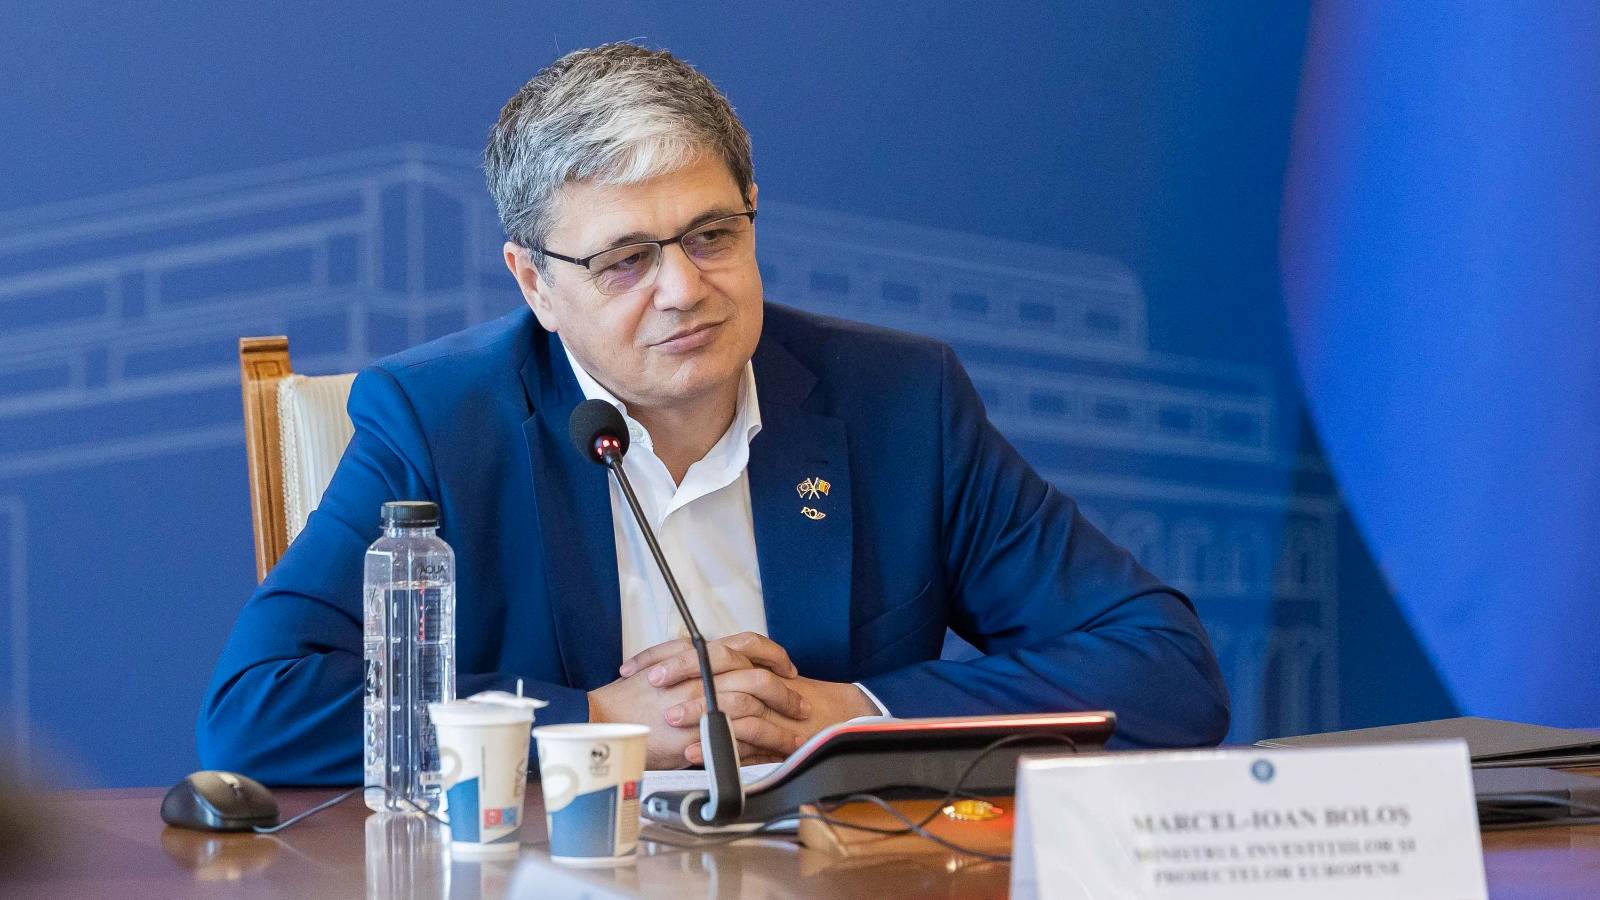 Marcel Bolos annoncerer VIGTIGE investeringer Rumænien Millioner af rumænere